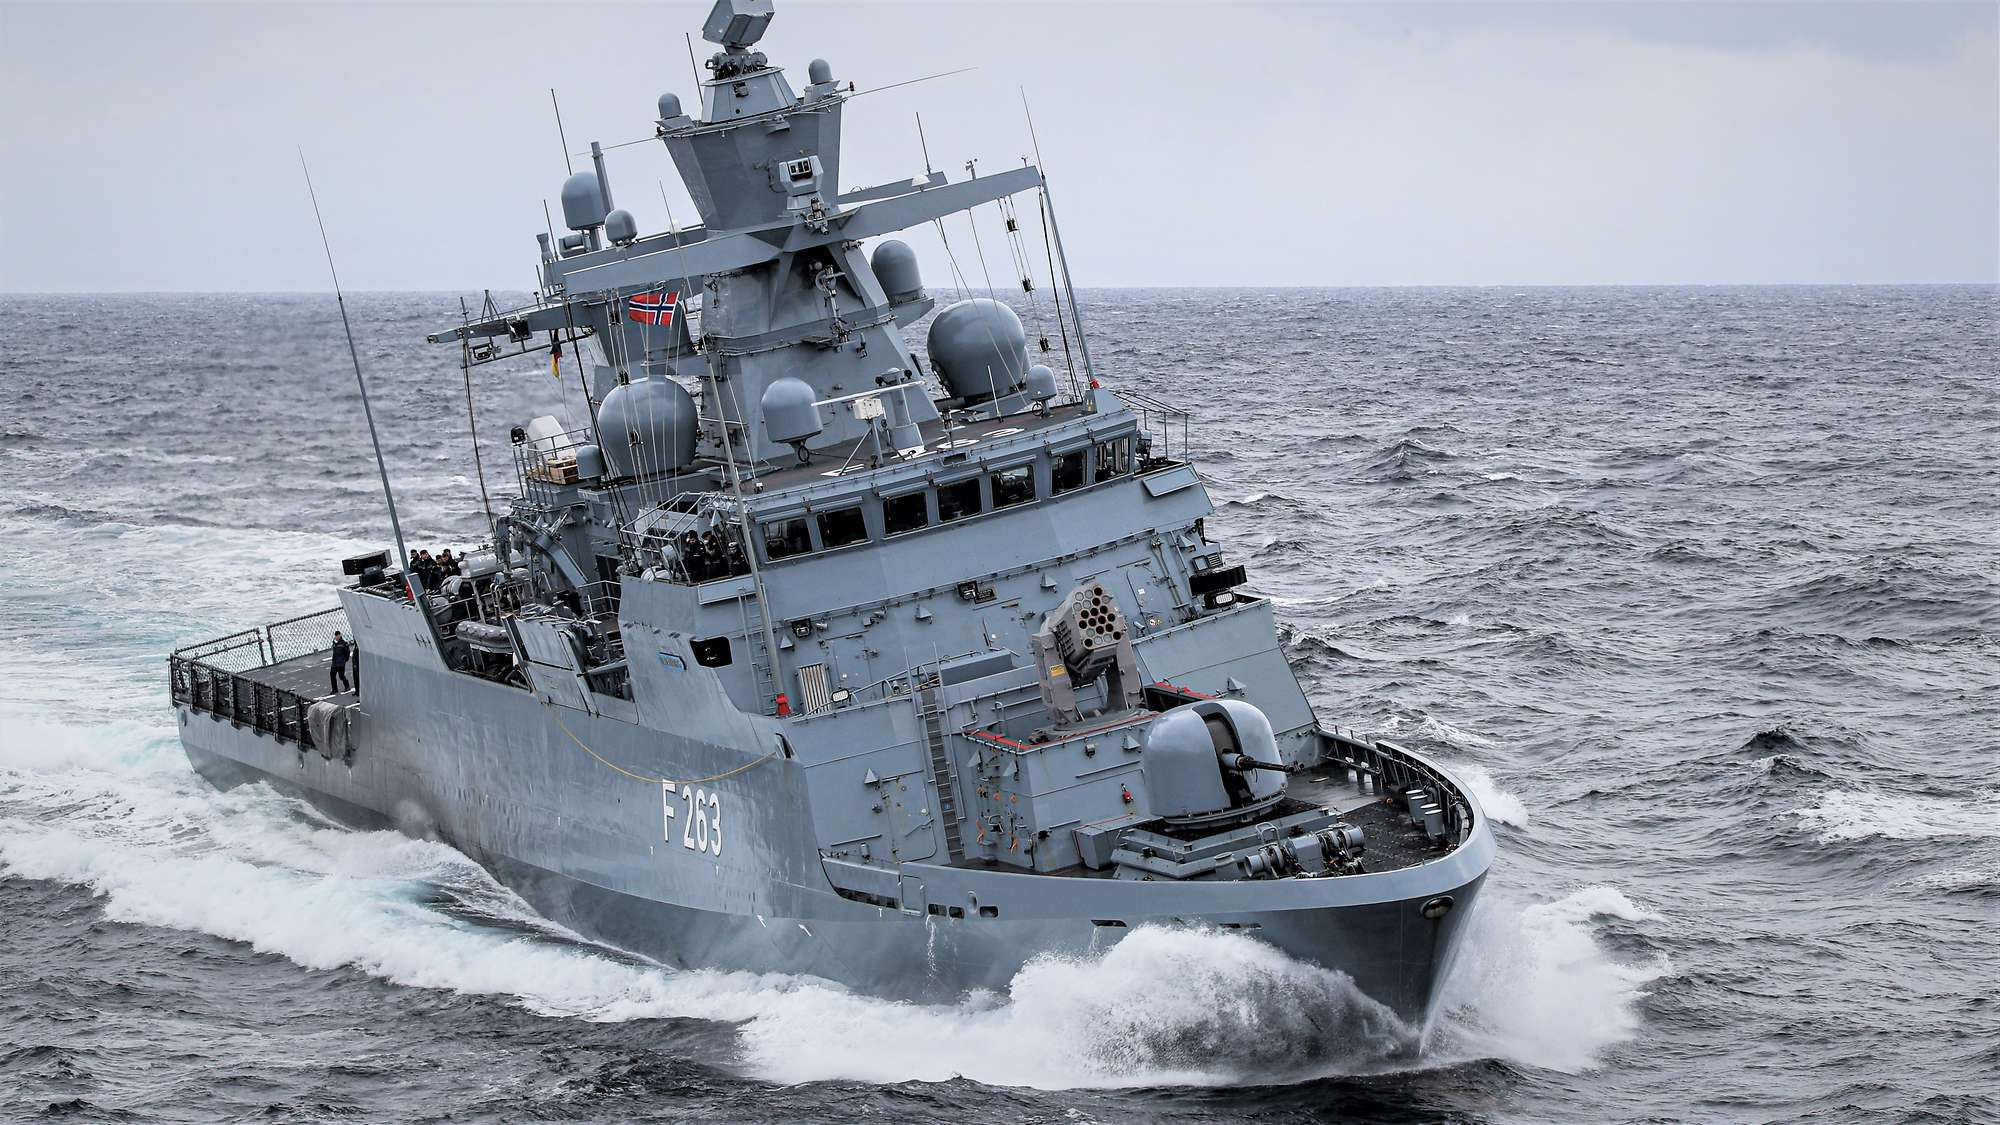 Корвет “Oldenburg” (F263) ВМС Німеччини. Червень 2022. Норвегія. Фото: ВМС Німеччини